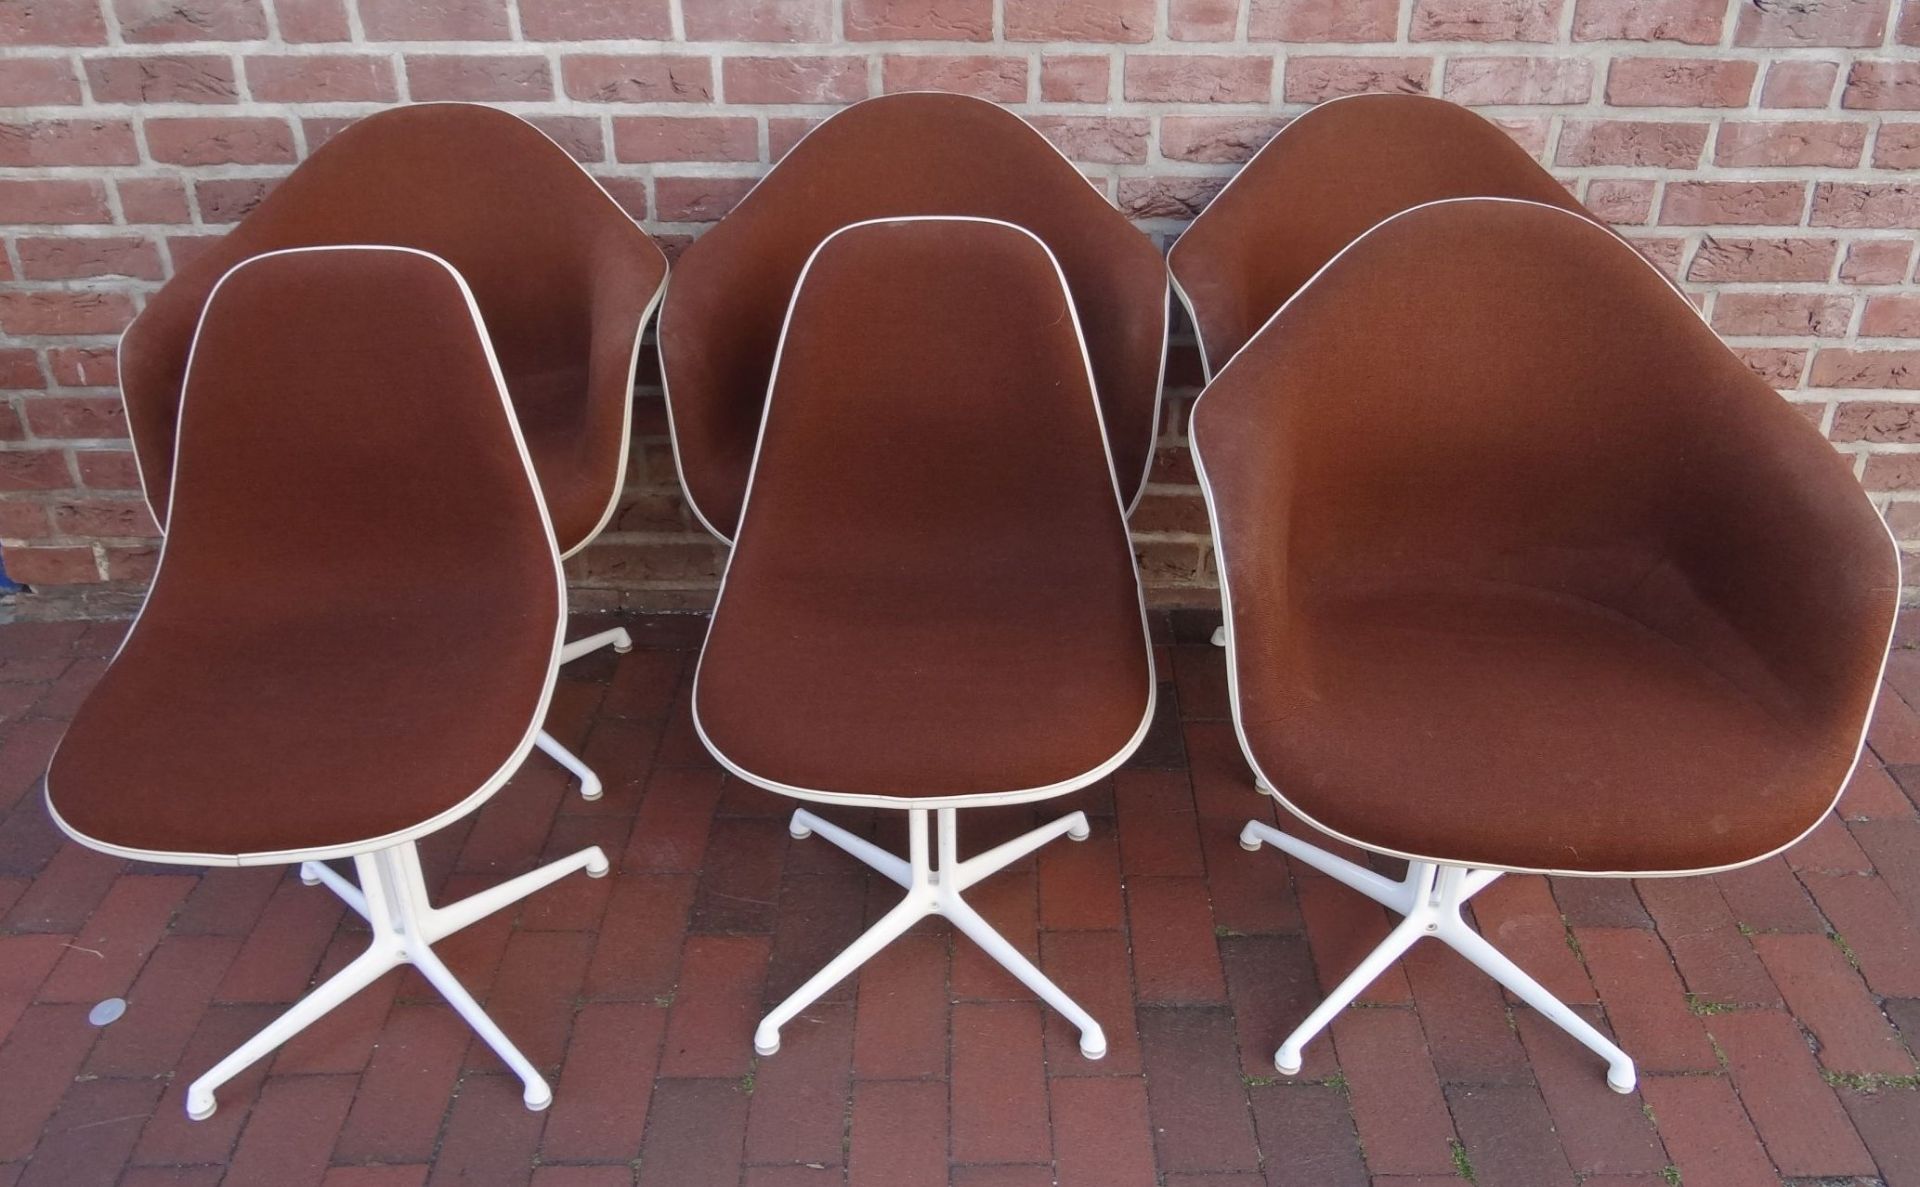 Charles & Ray Eames for Herman Miller (Fehlbaum production) Tischgruppe mit 6 Stühlen, davon 4x - Bild 9 aus 10